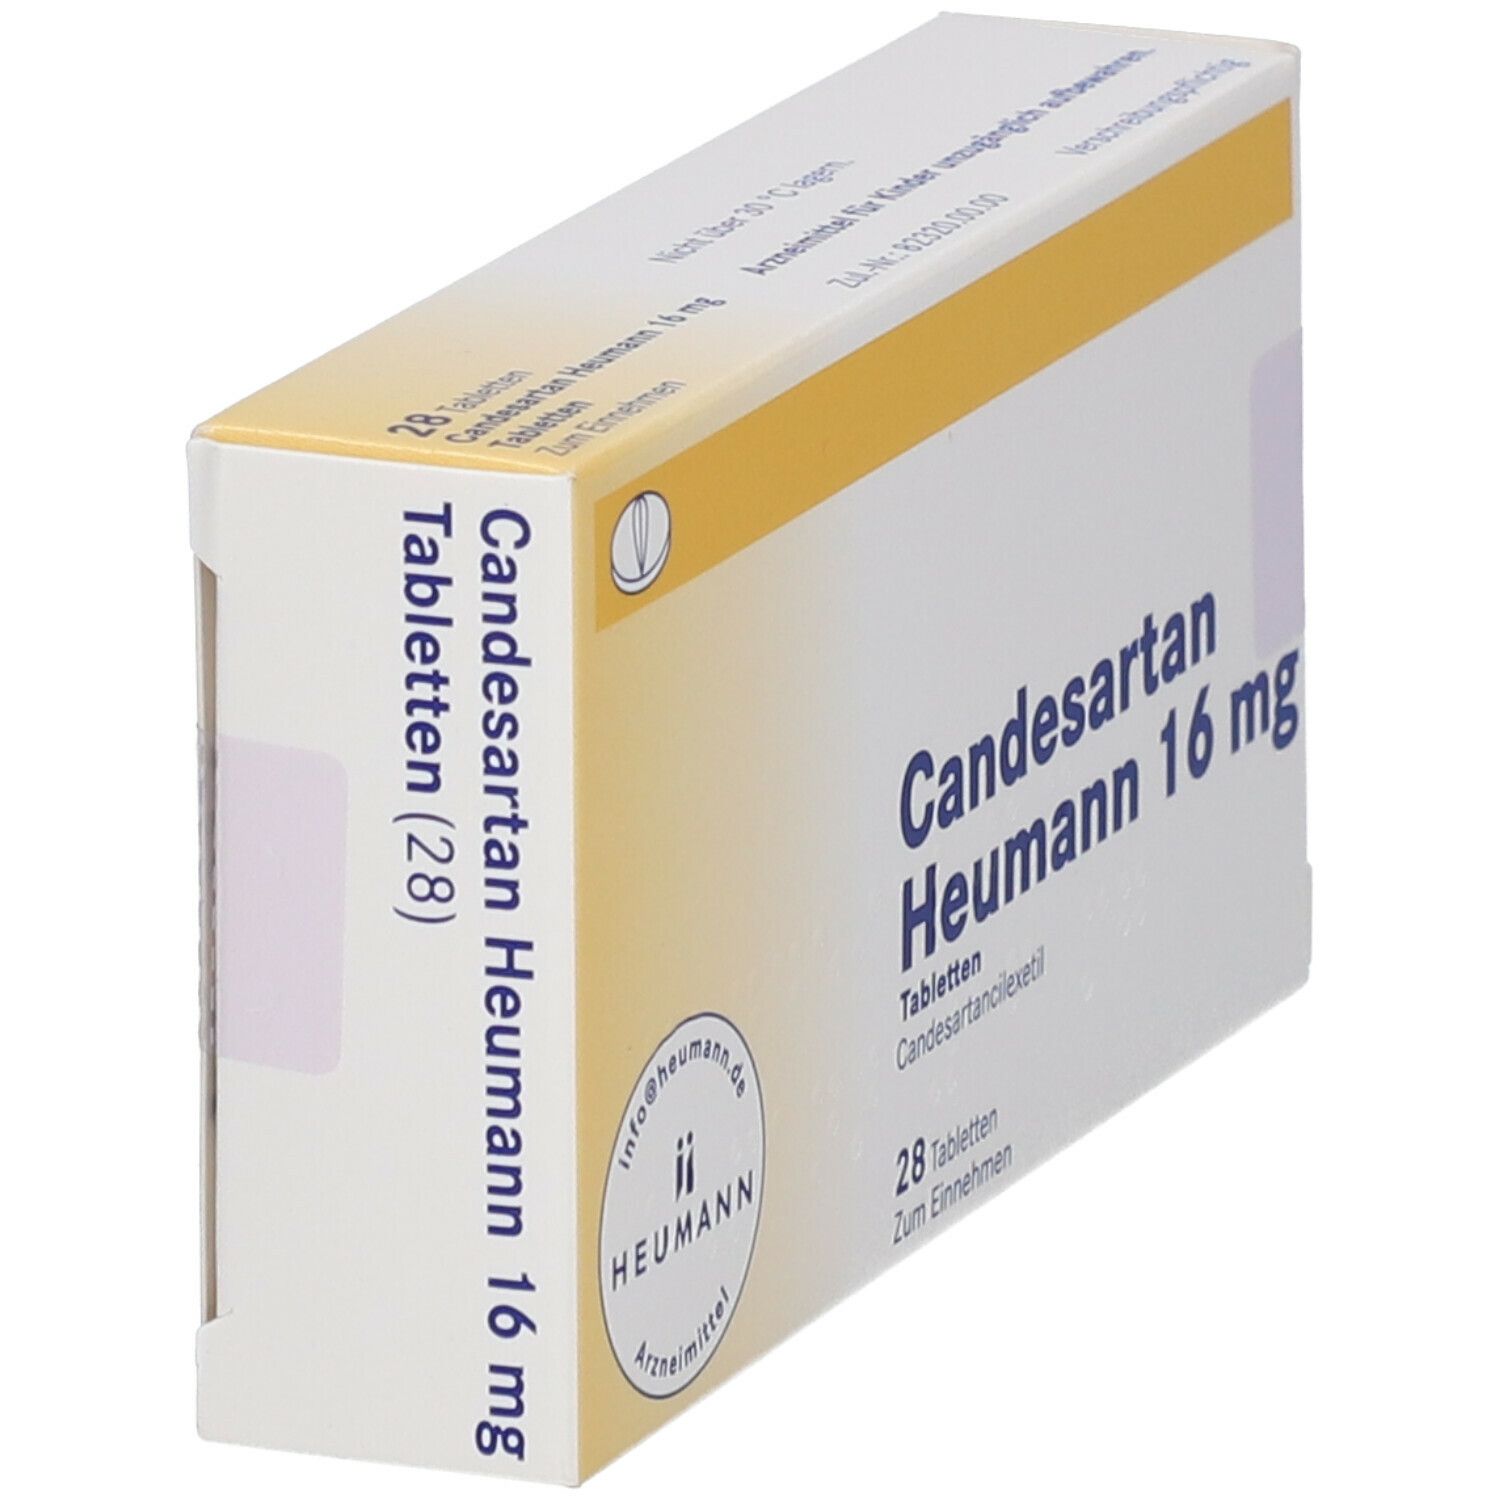 Candesartan Heumann 16 mg